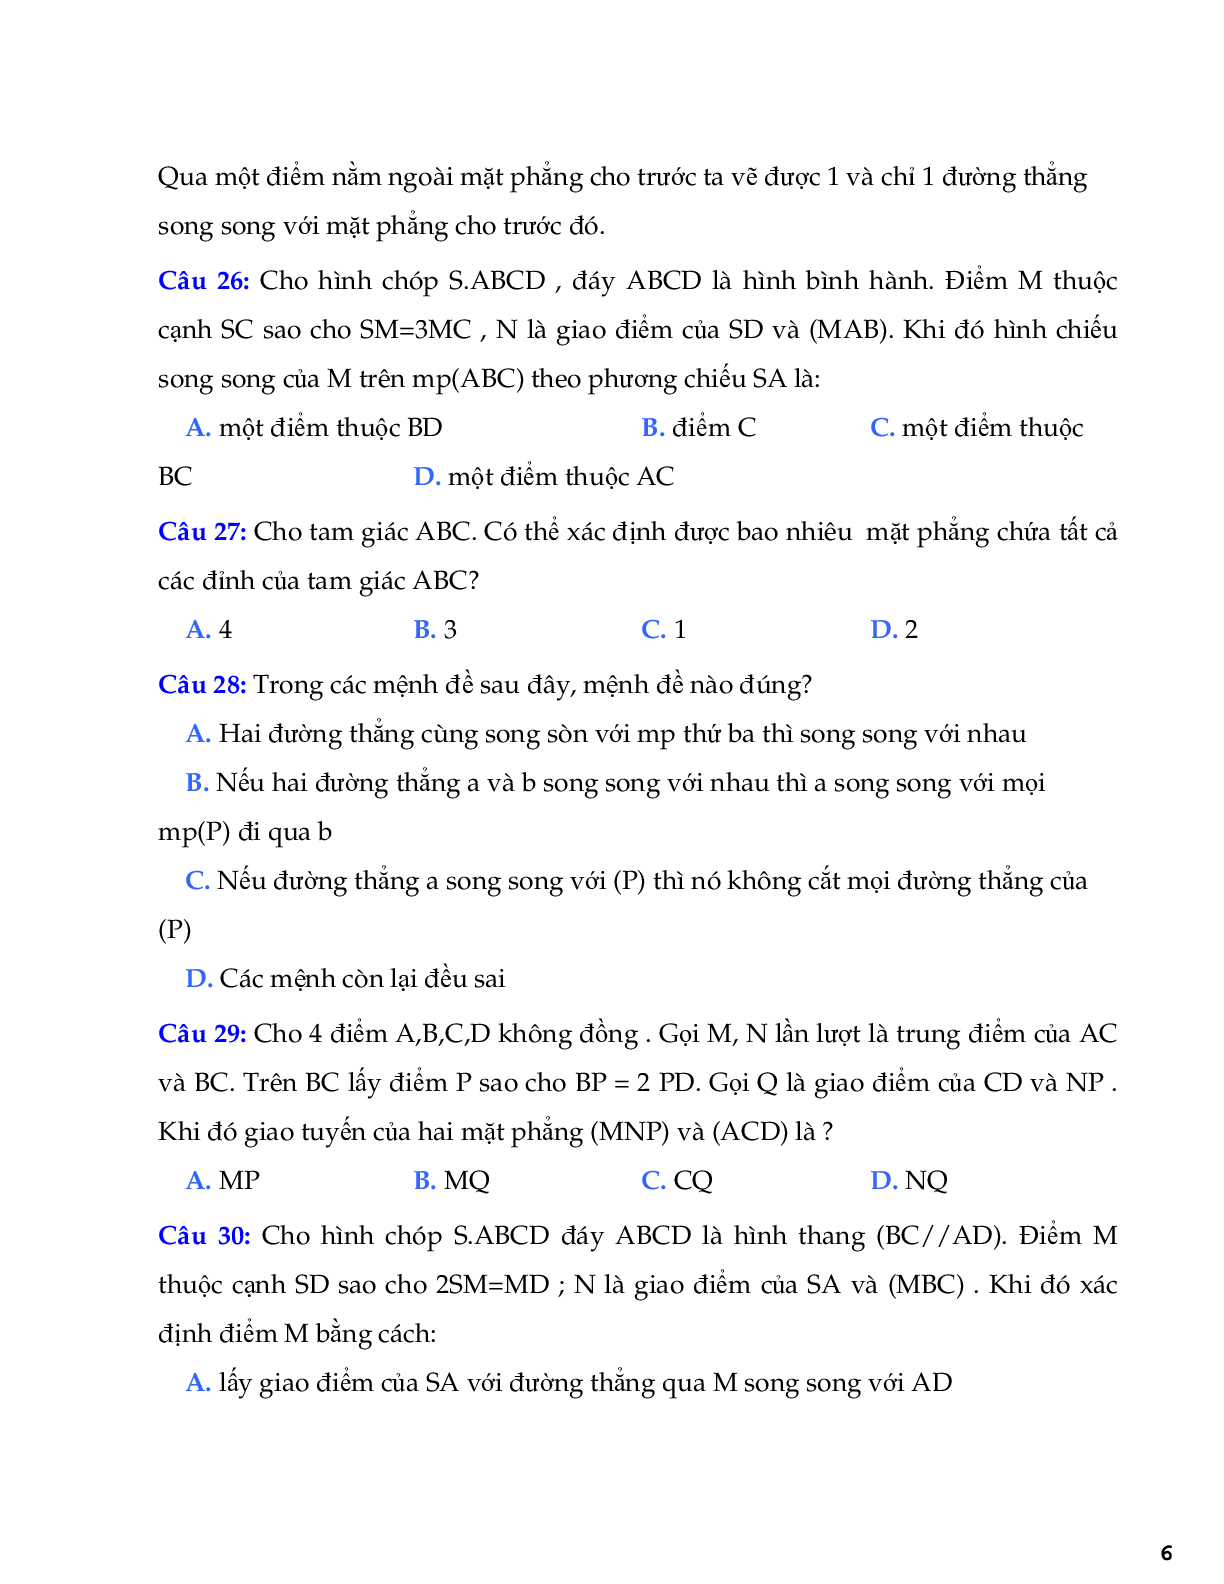 121 bài tập trắc nghiệm quan hệ song song (trang 6)